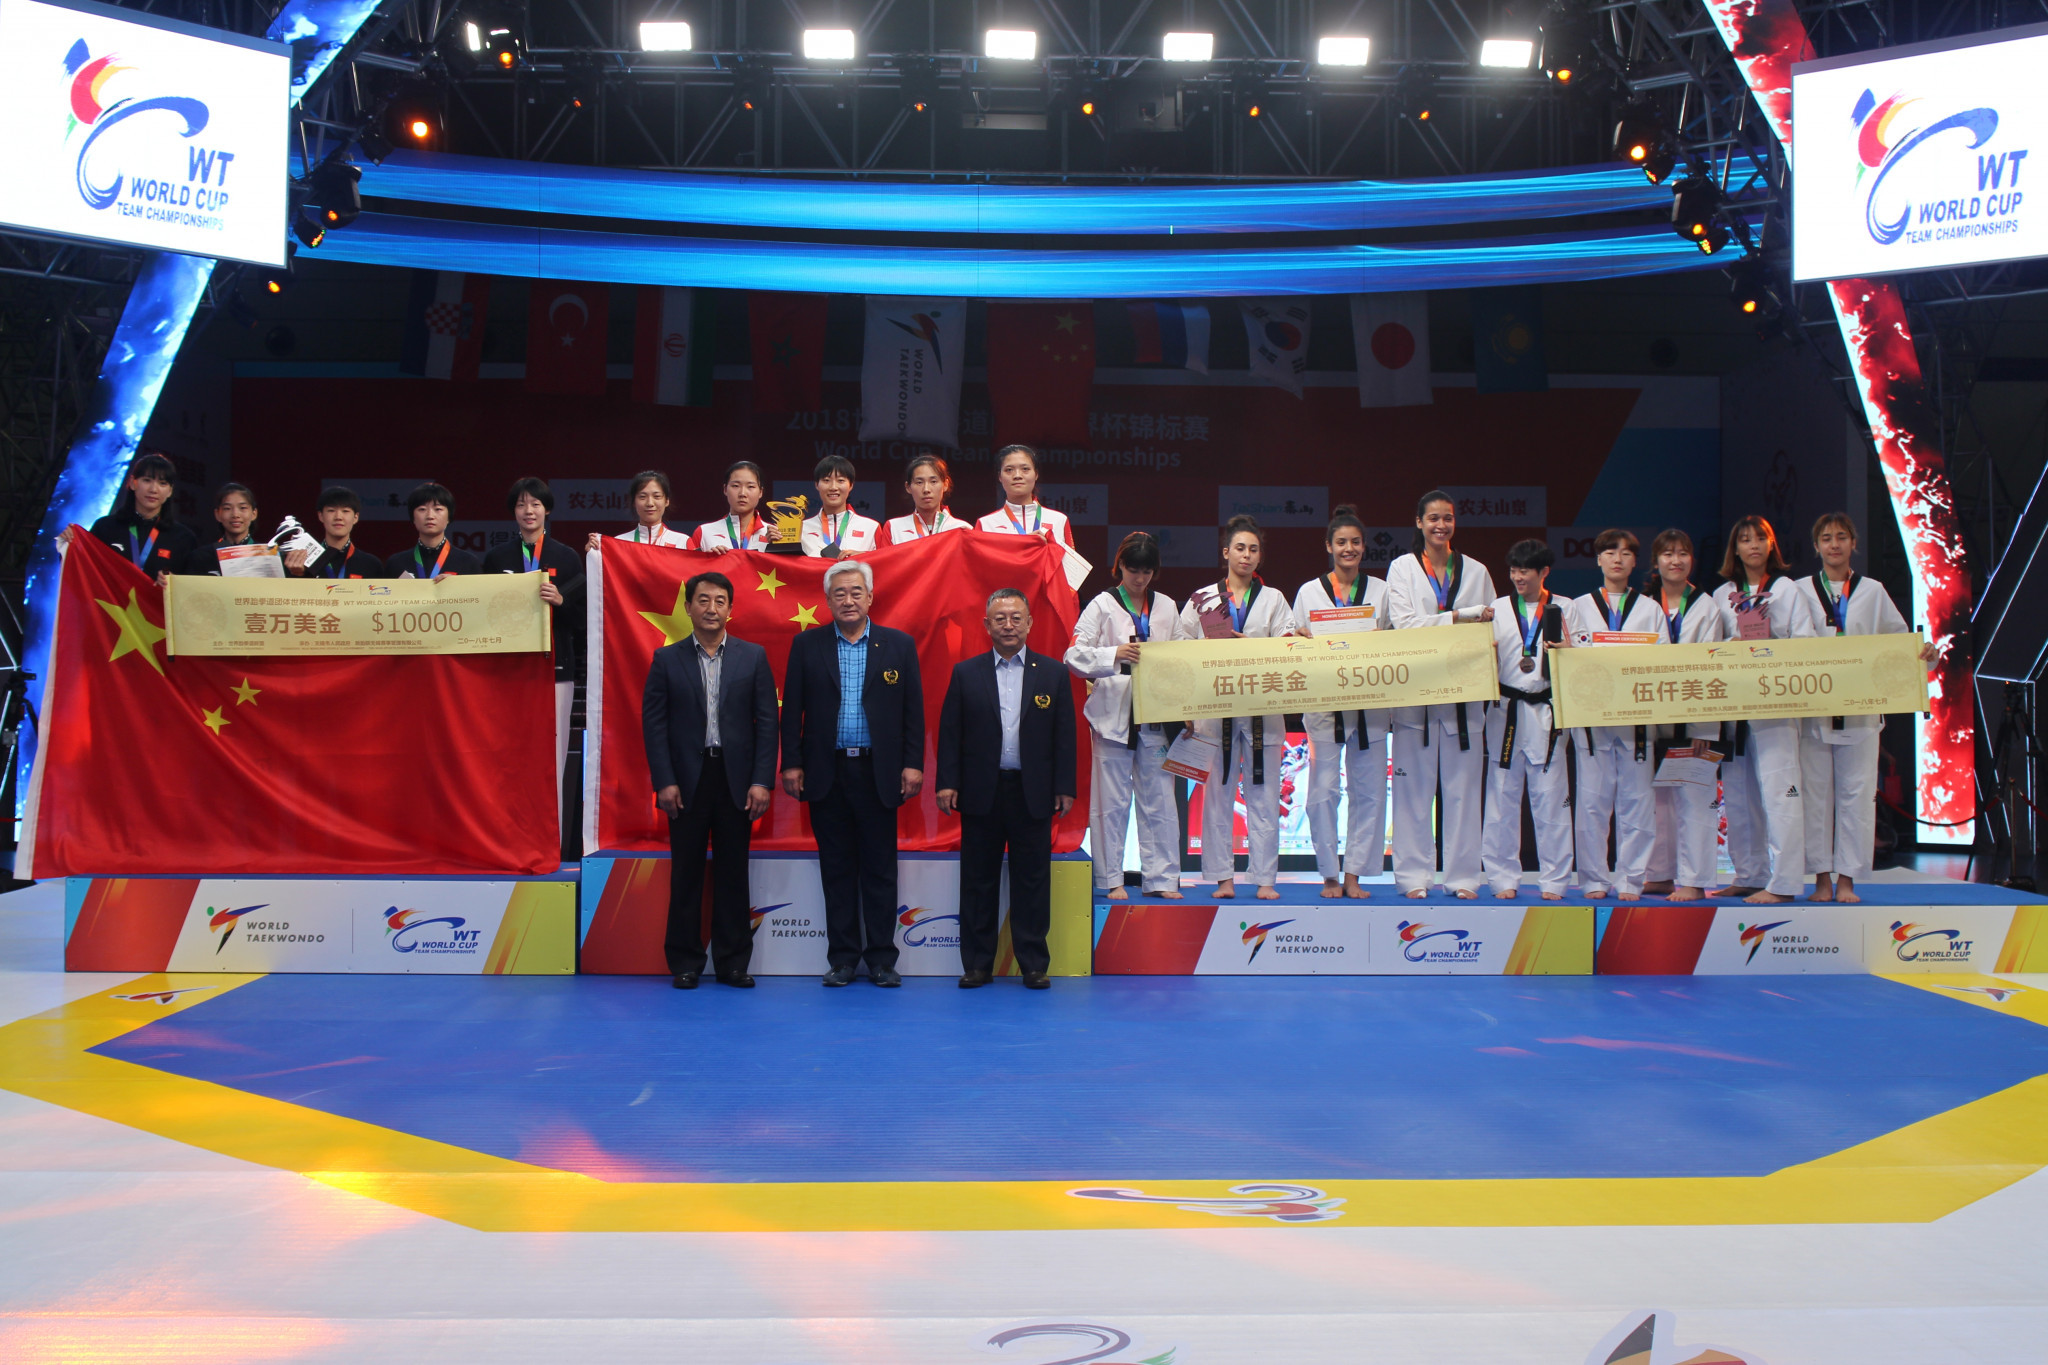 The awarding ceremony at the World Taekwondo World Cup Team Championships in Wuxi © World Taekwondo